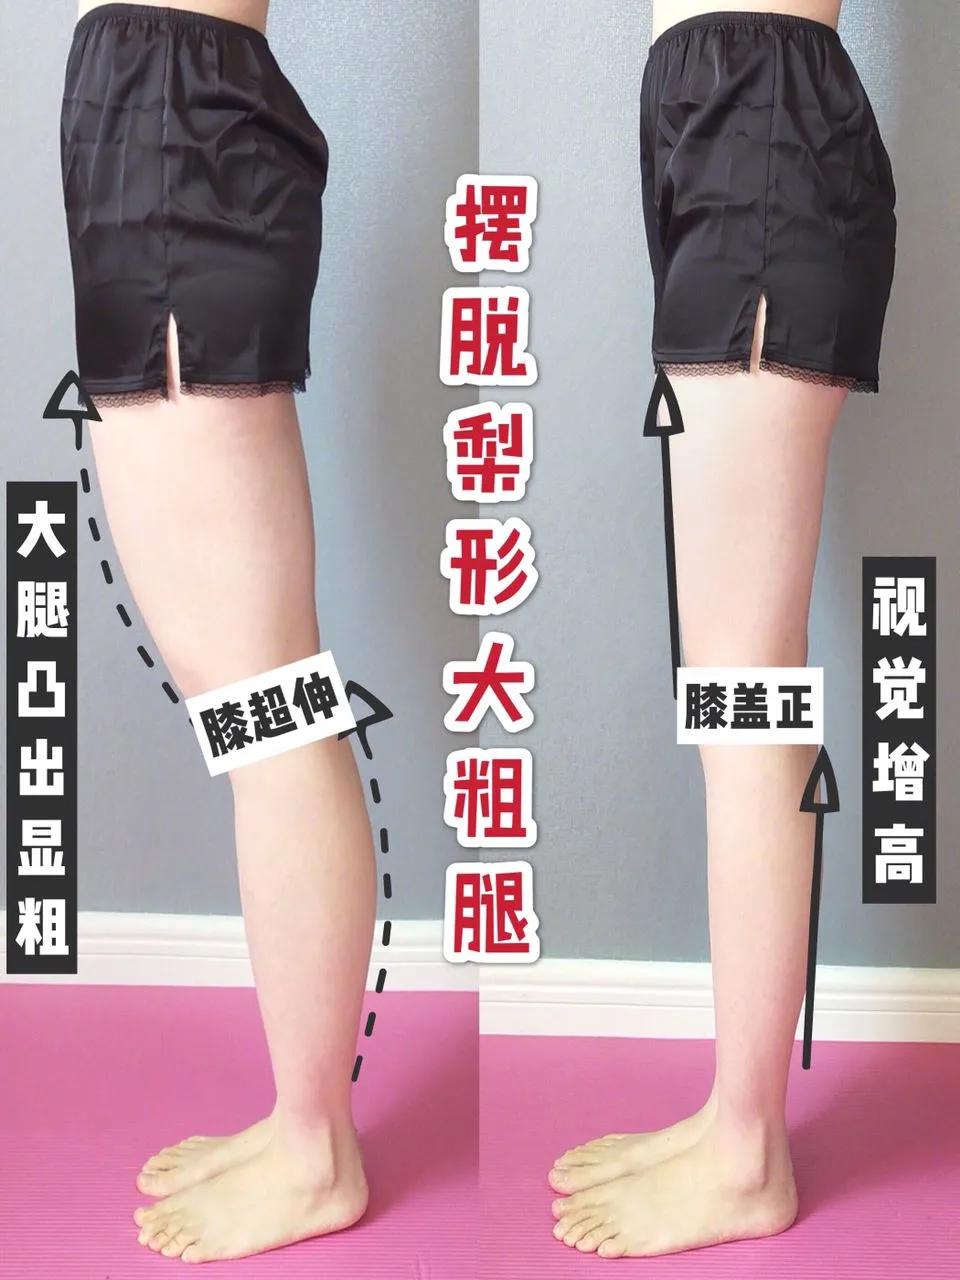 腿型管理腿不直改善各种不良腿型